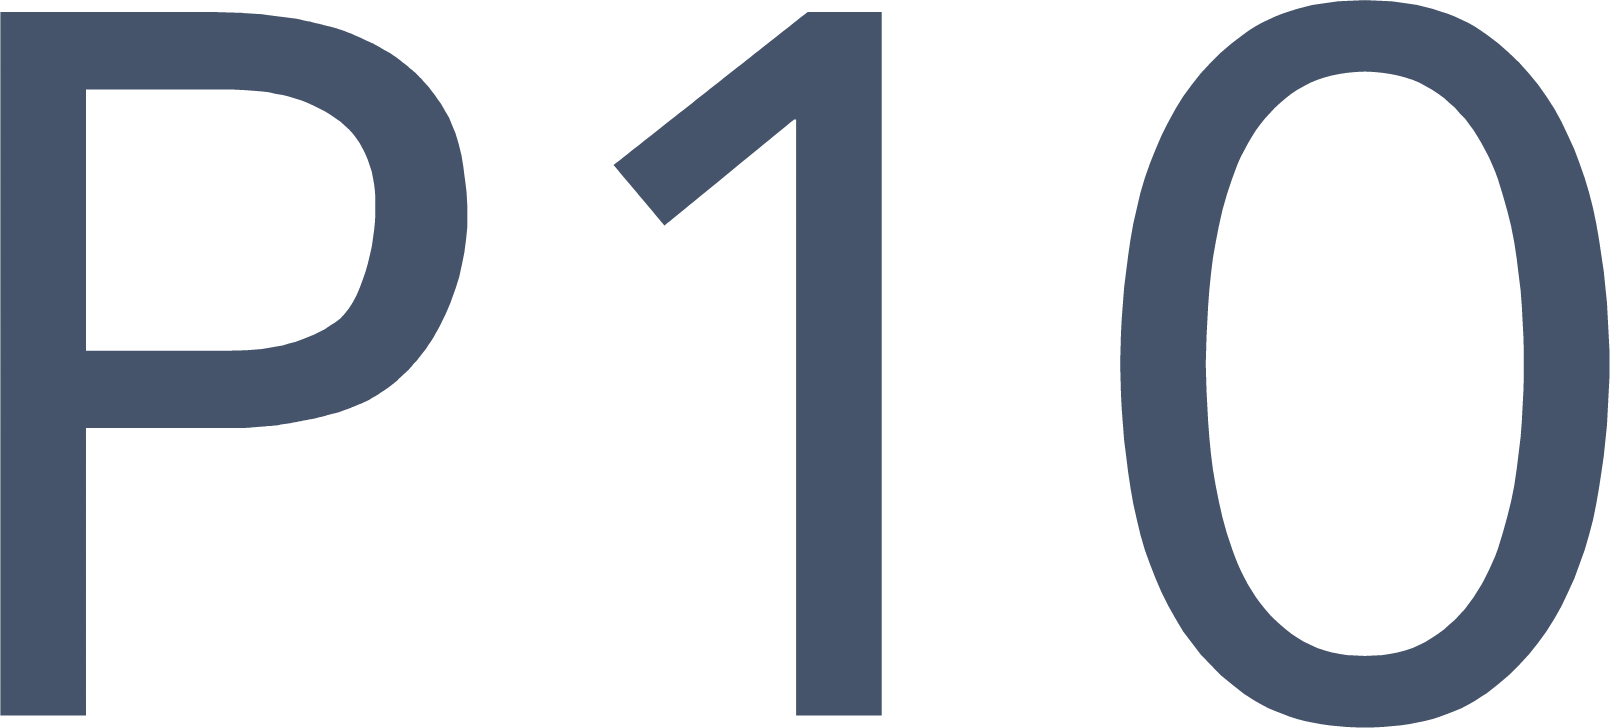 P10 logo (transparent PNG)